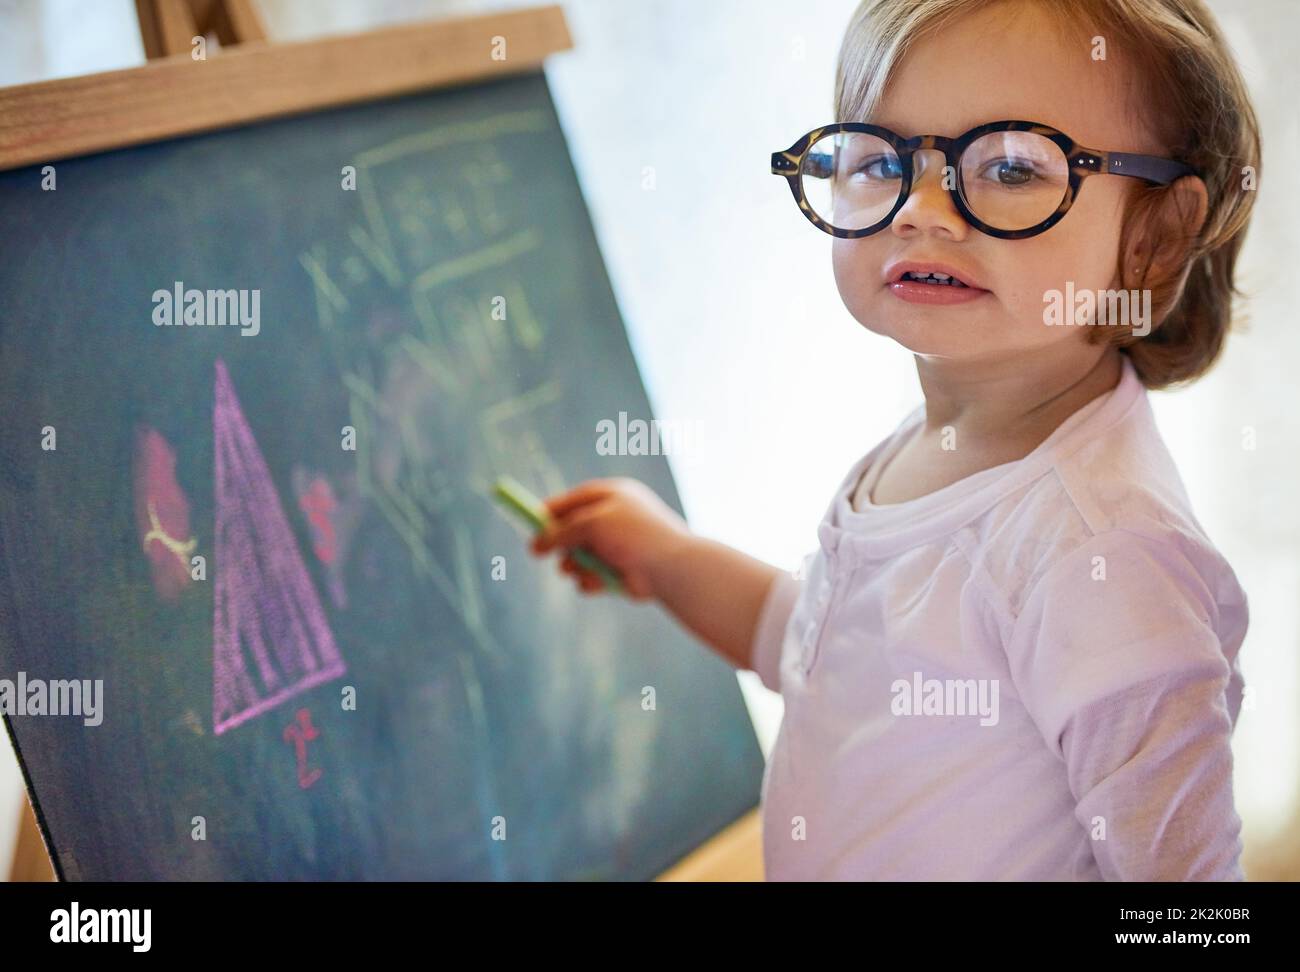 Fare la matematica assomiglia ai bambini giocare. Ritratto di una bambina adorabile con grandi occhiali che risolve un problema di matematica su una lavagna a casa. Foto Stock